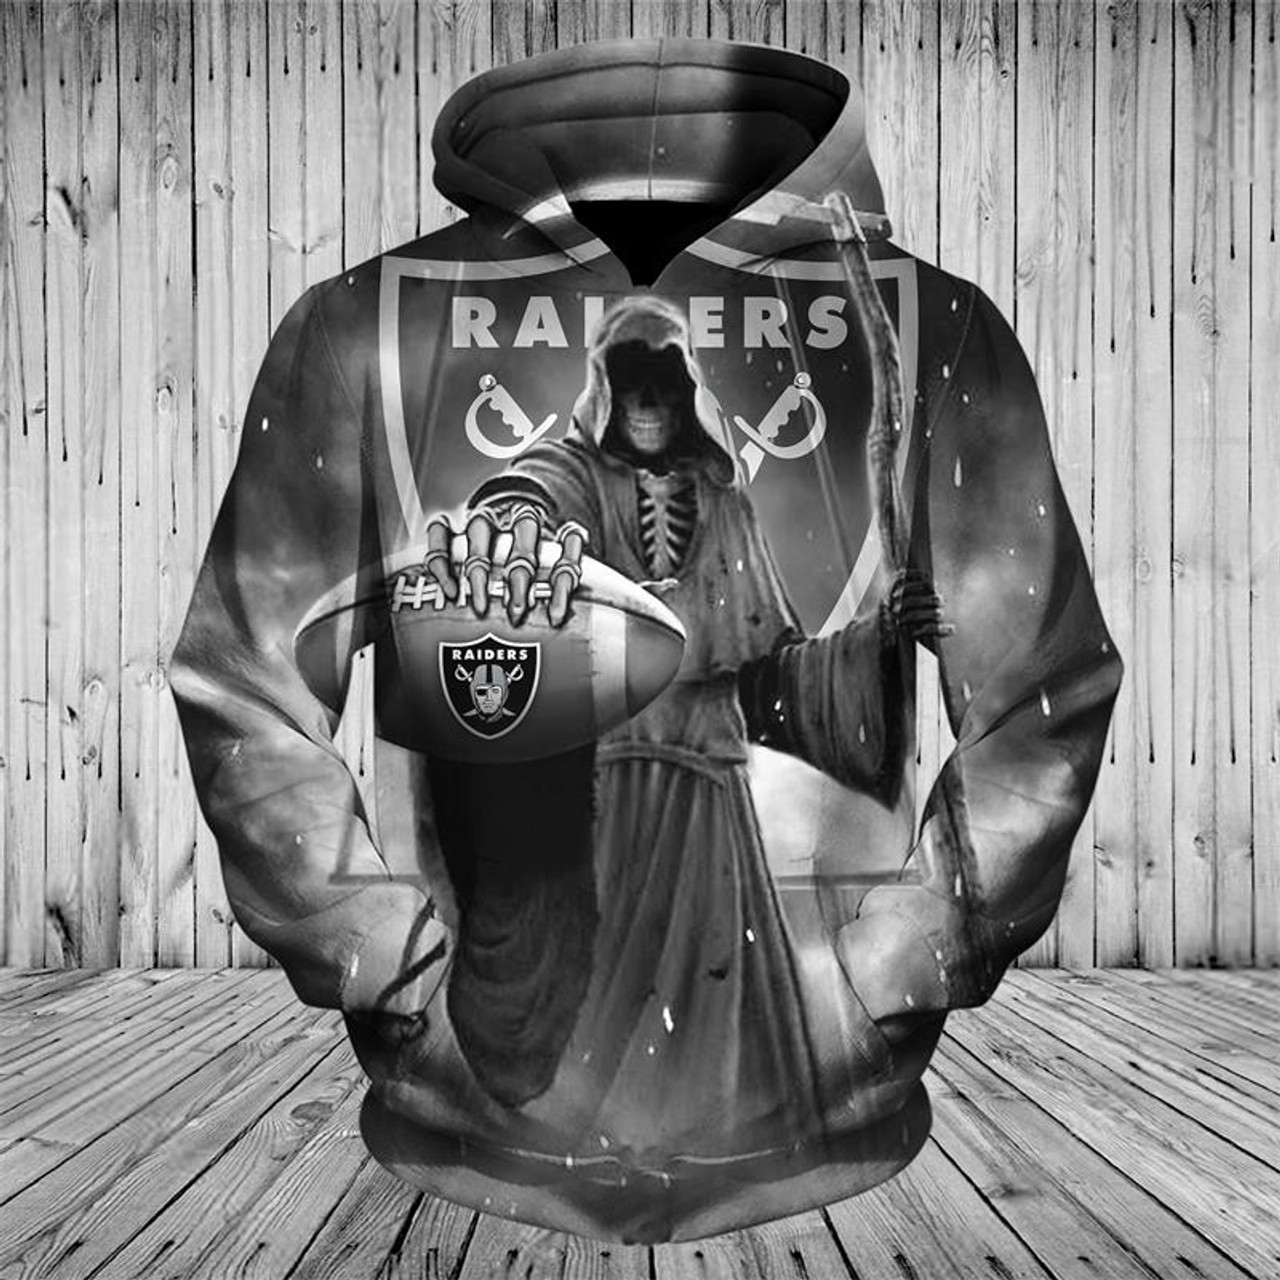 nfl oakland raiders hoodie